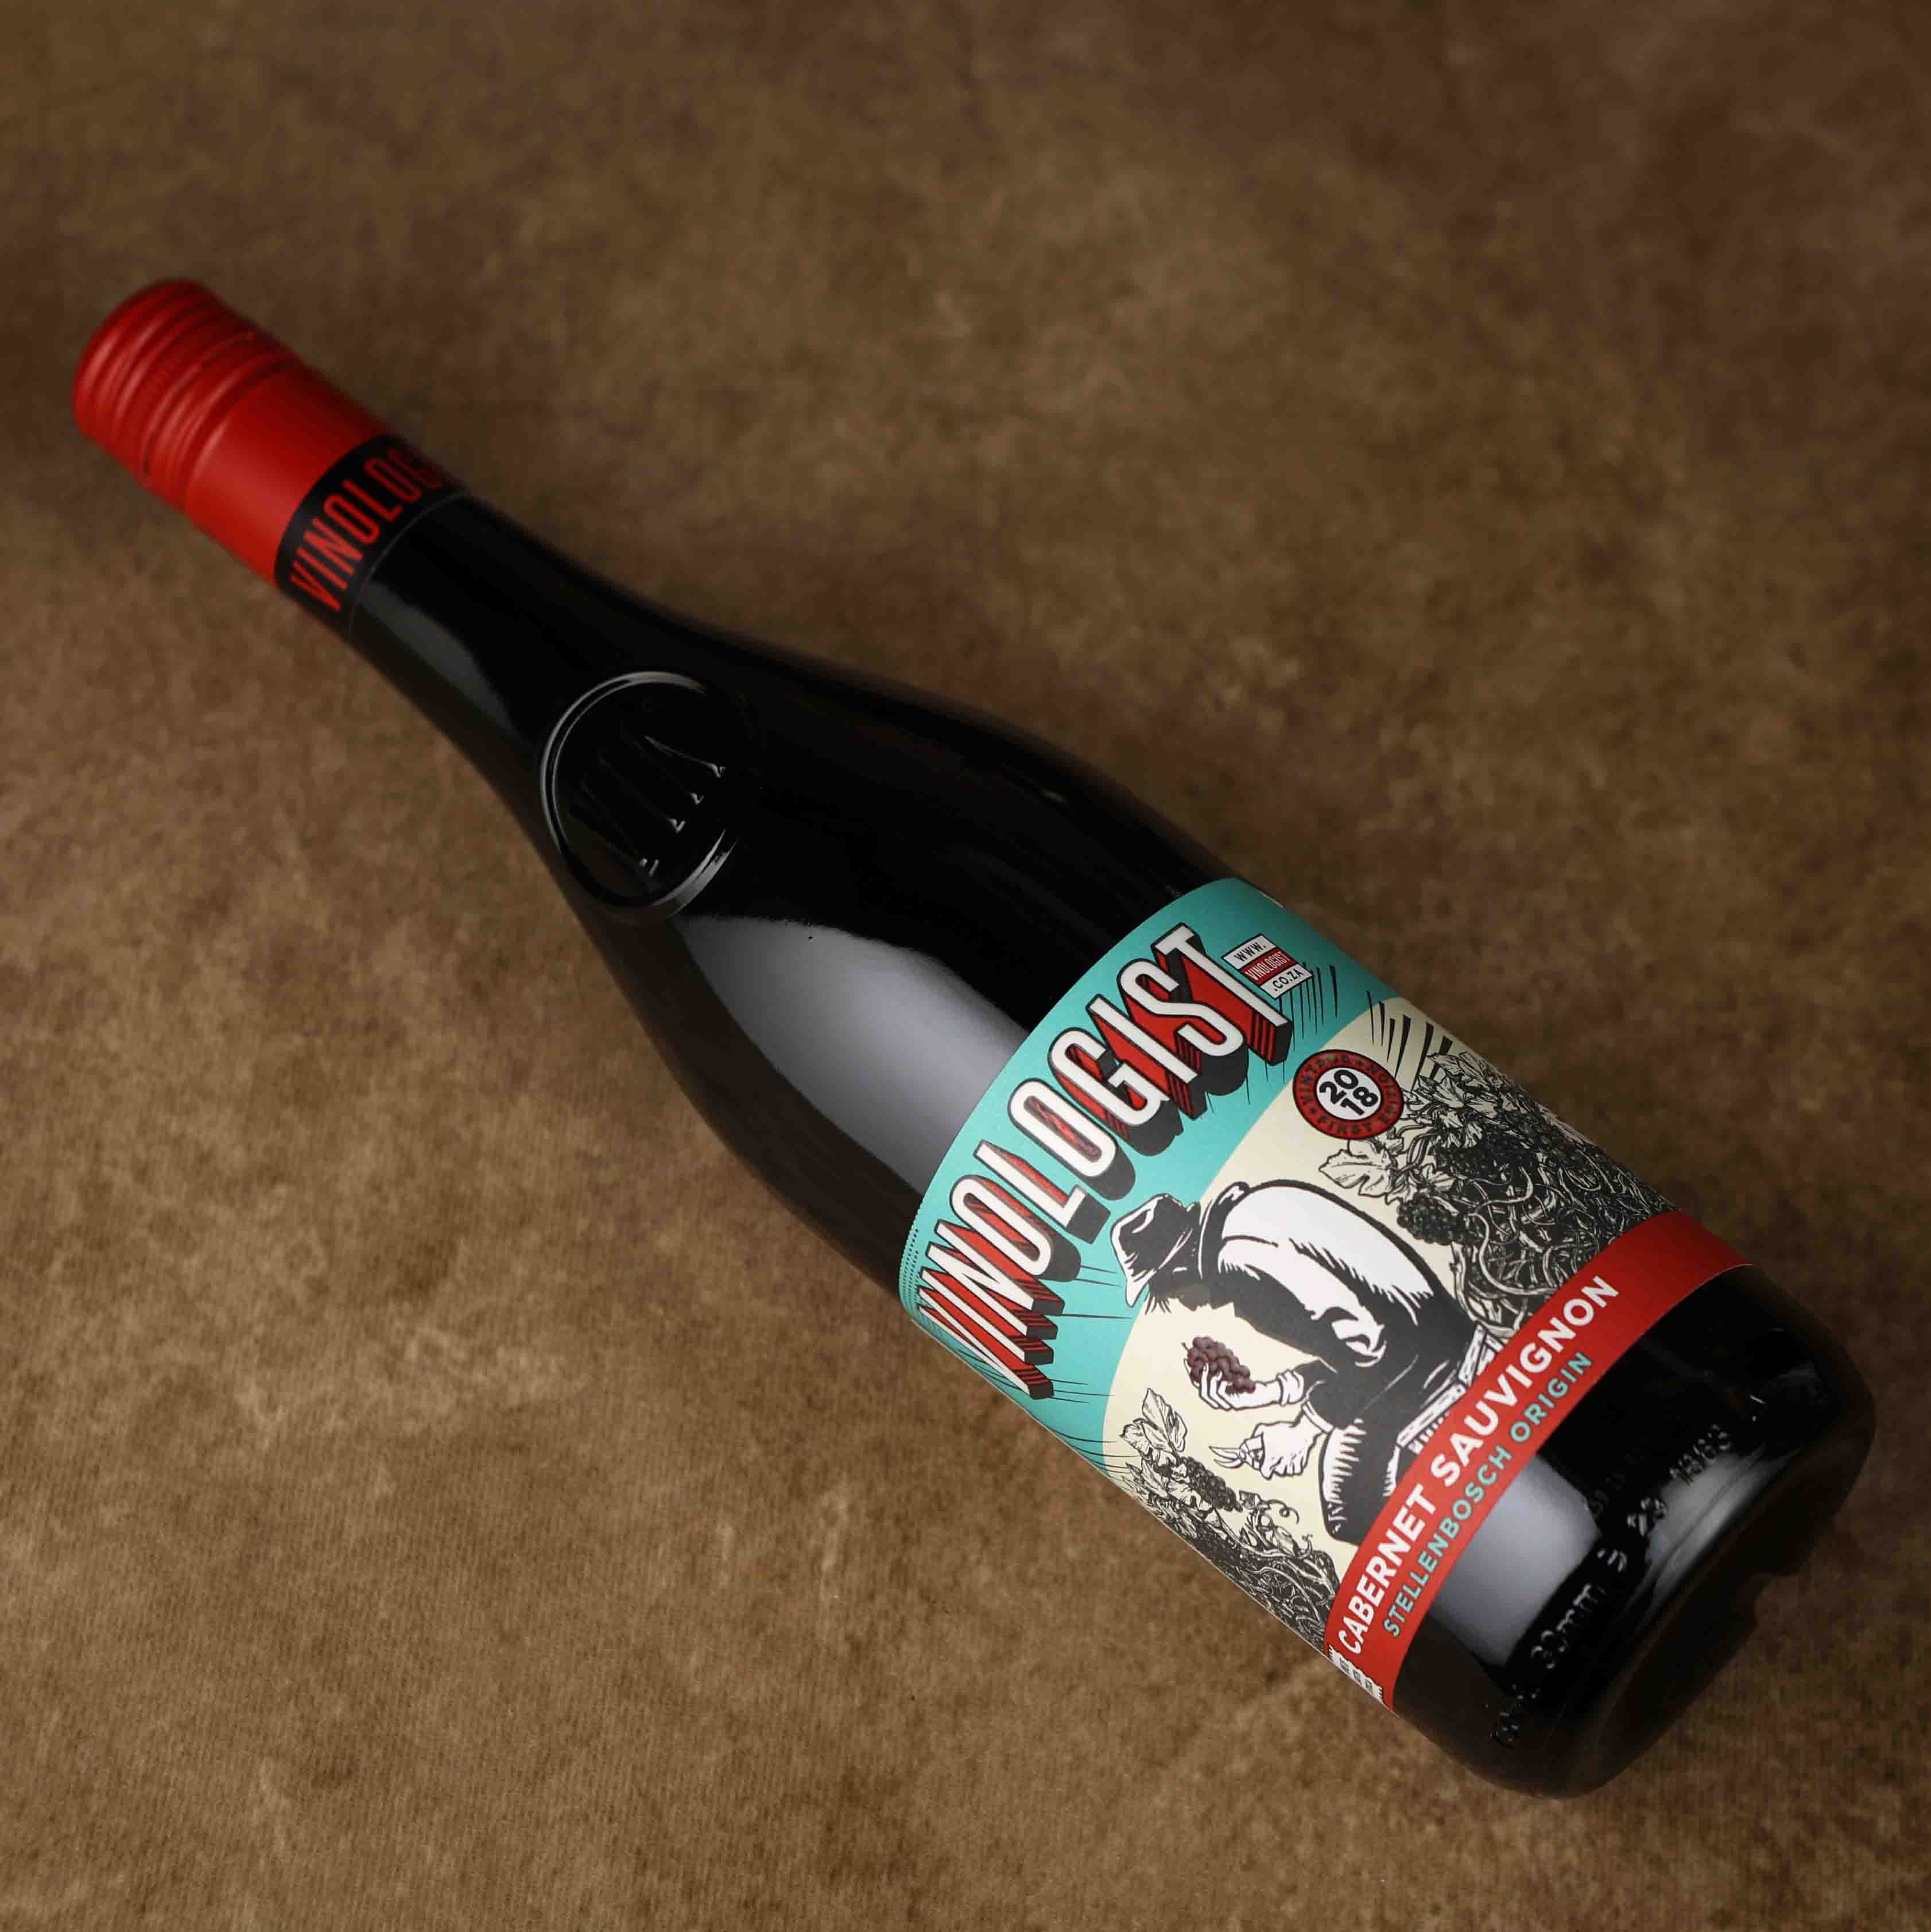 南非宝富酒庄酿造家赤霞珠干红葡萄酒